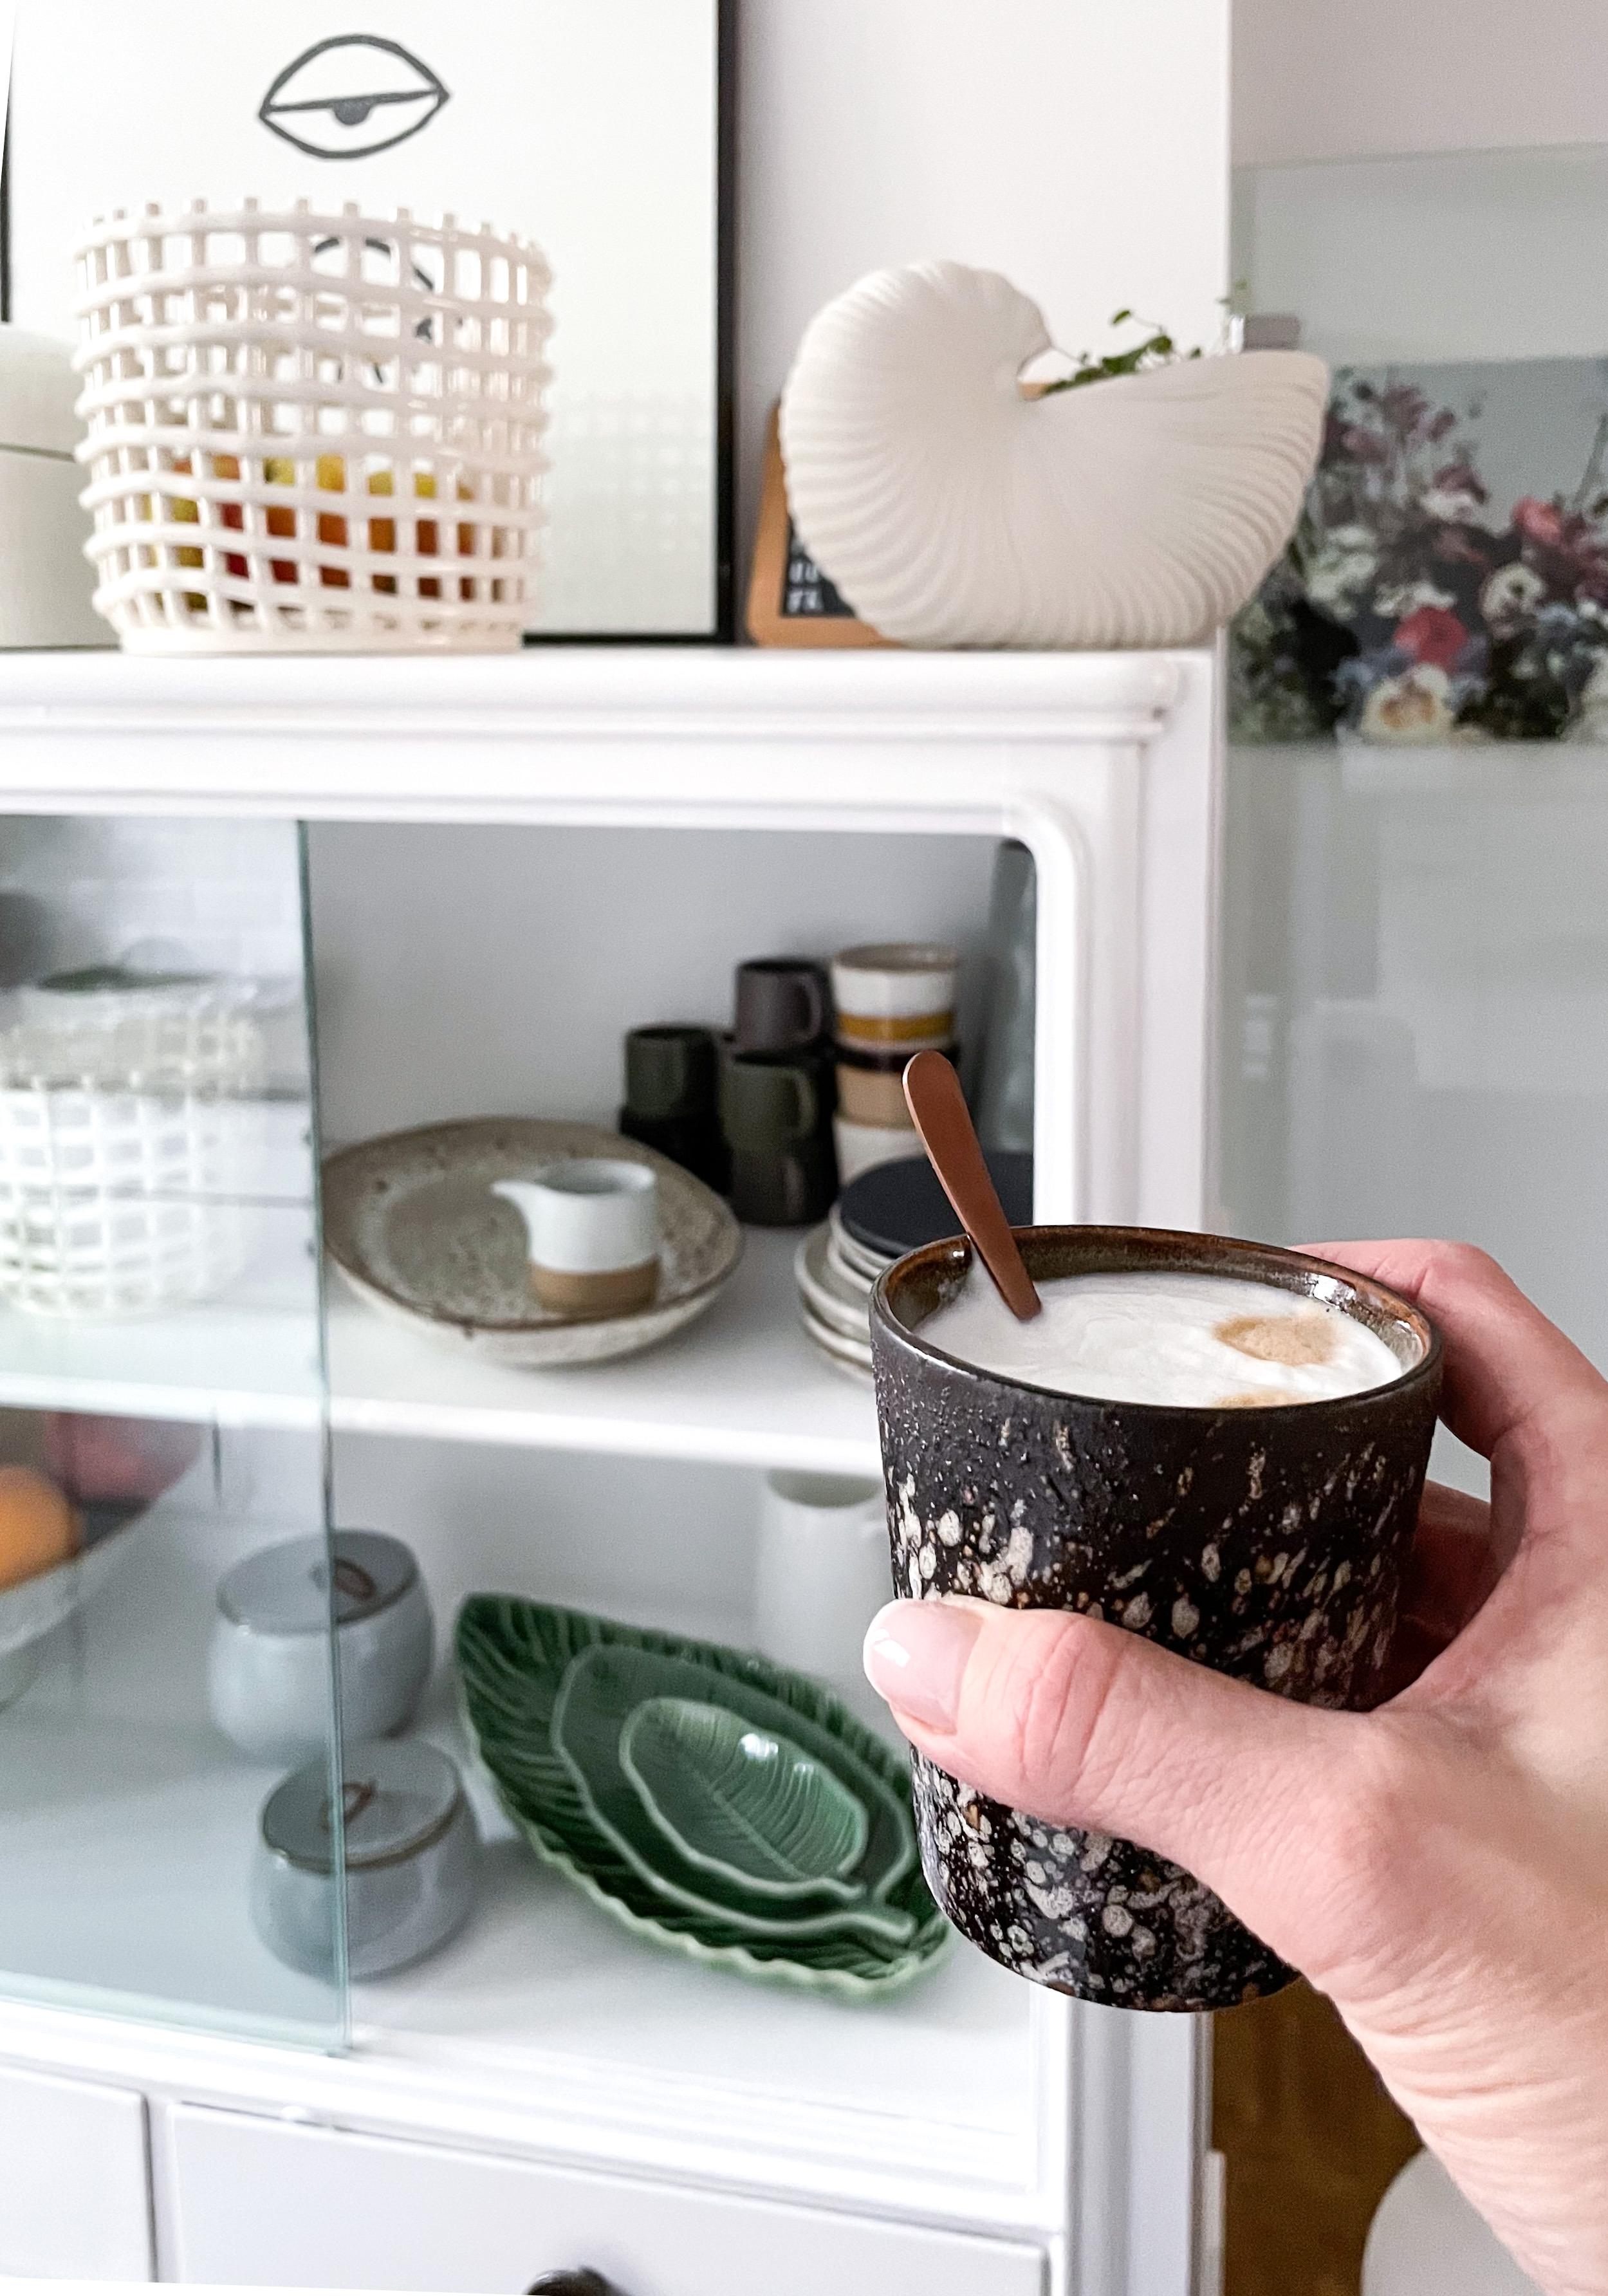 Hoch die Tassen!

#Kaffee #Kaffeepause #Keramik